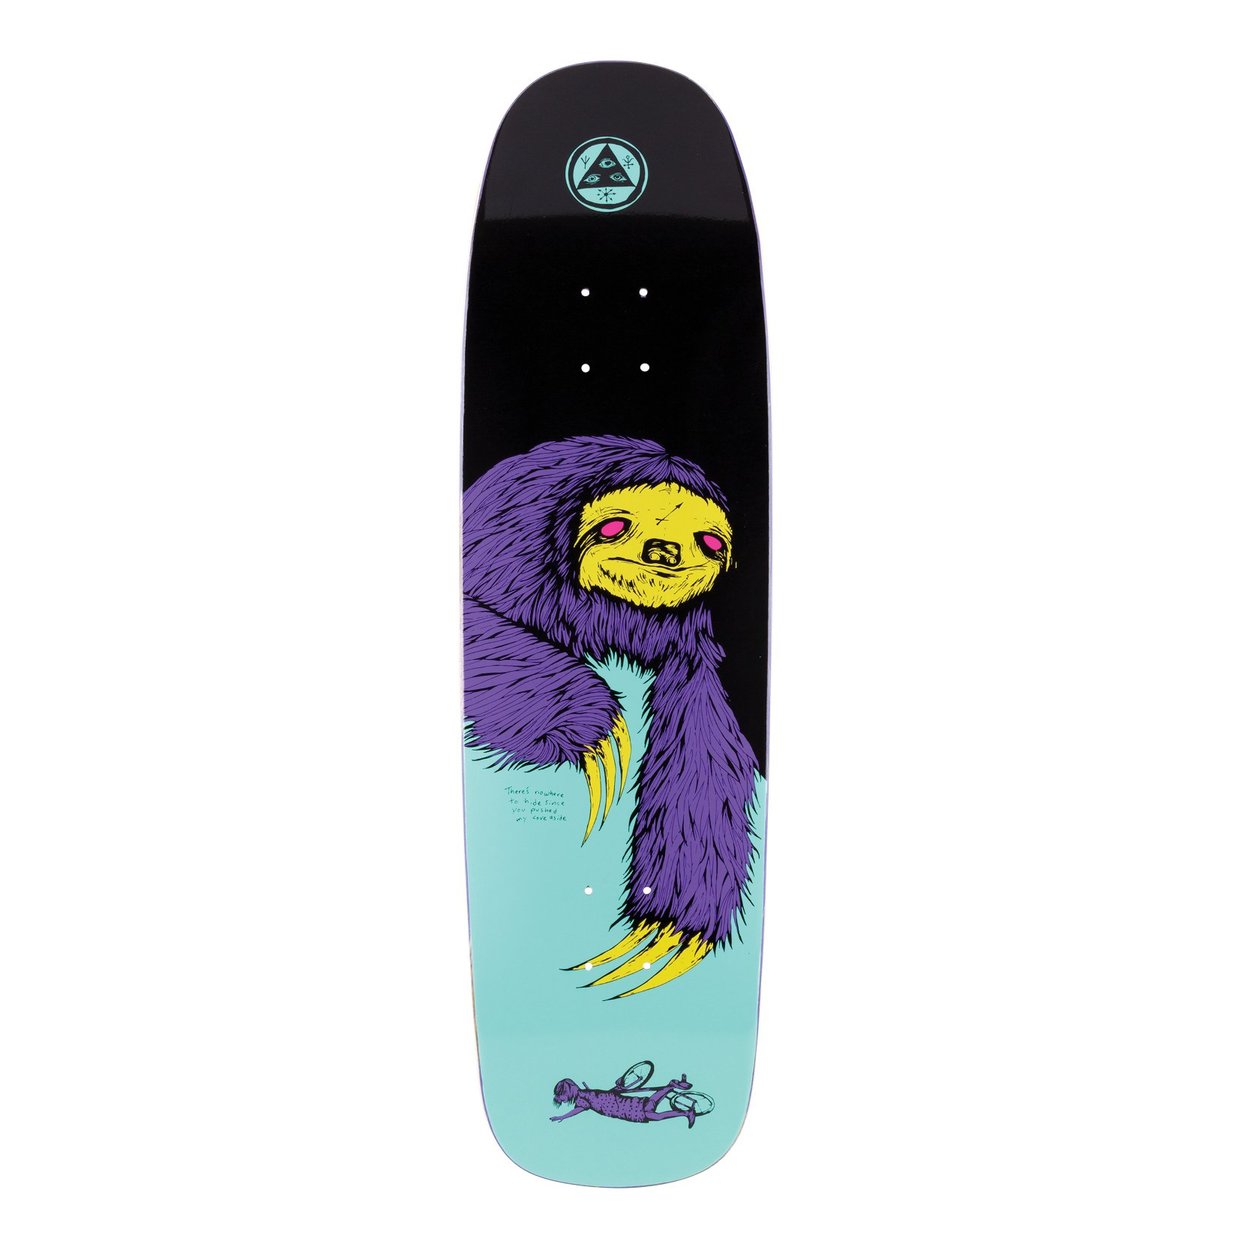 Welcome Sloth on Son Of Golem Skateboard Deck - Black/Teal